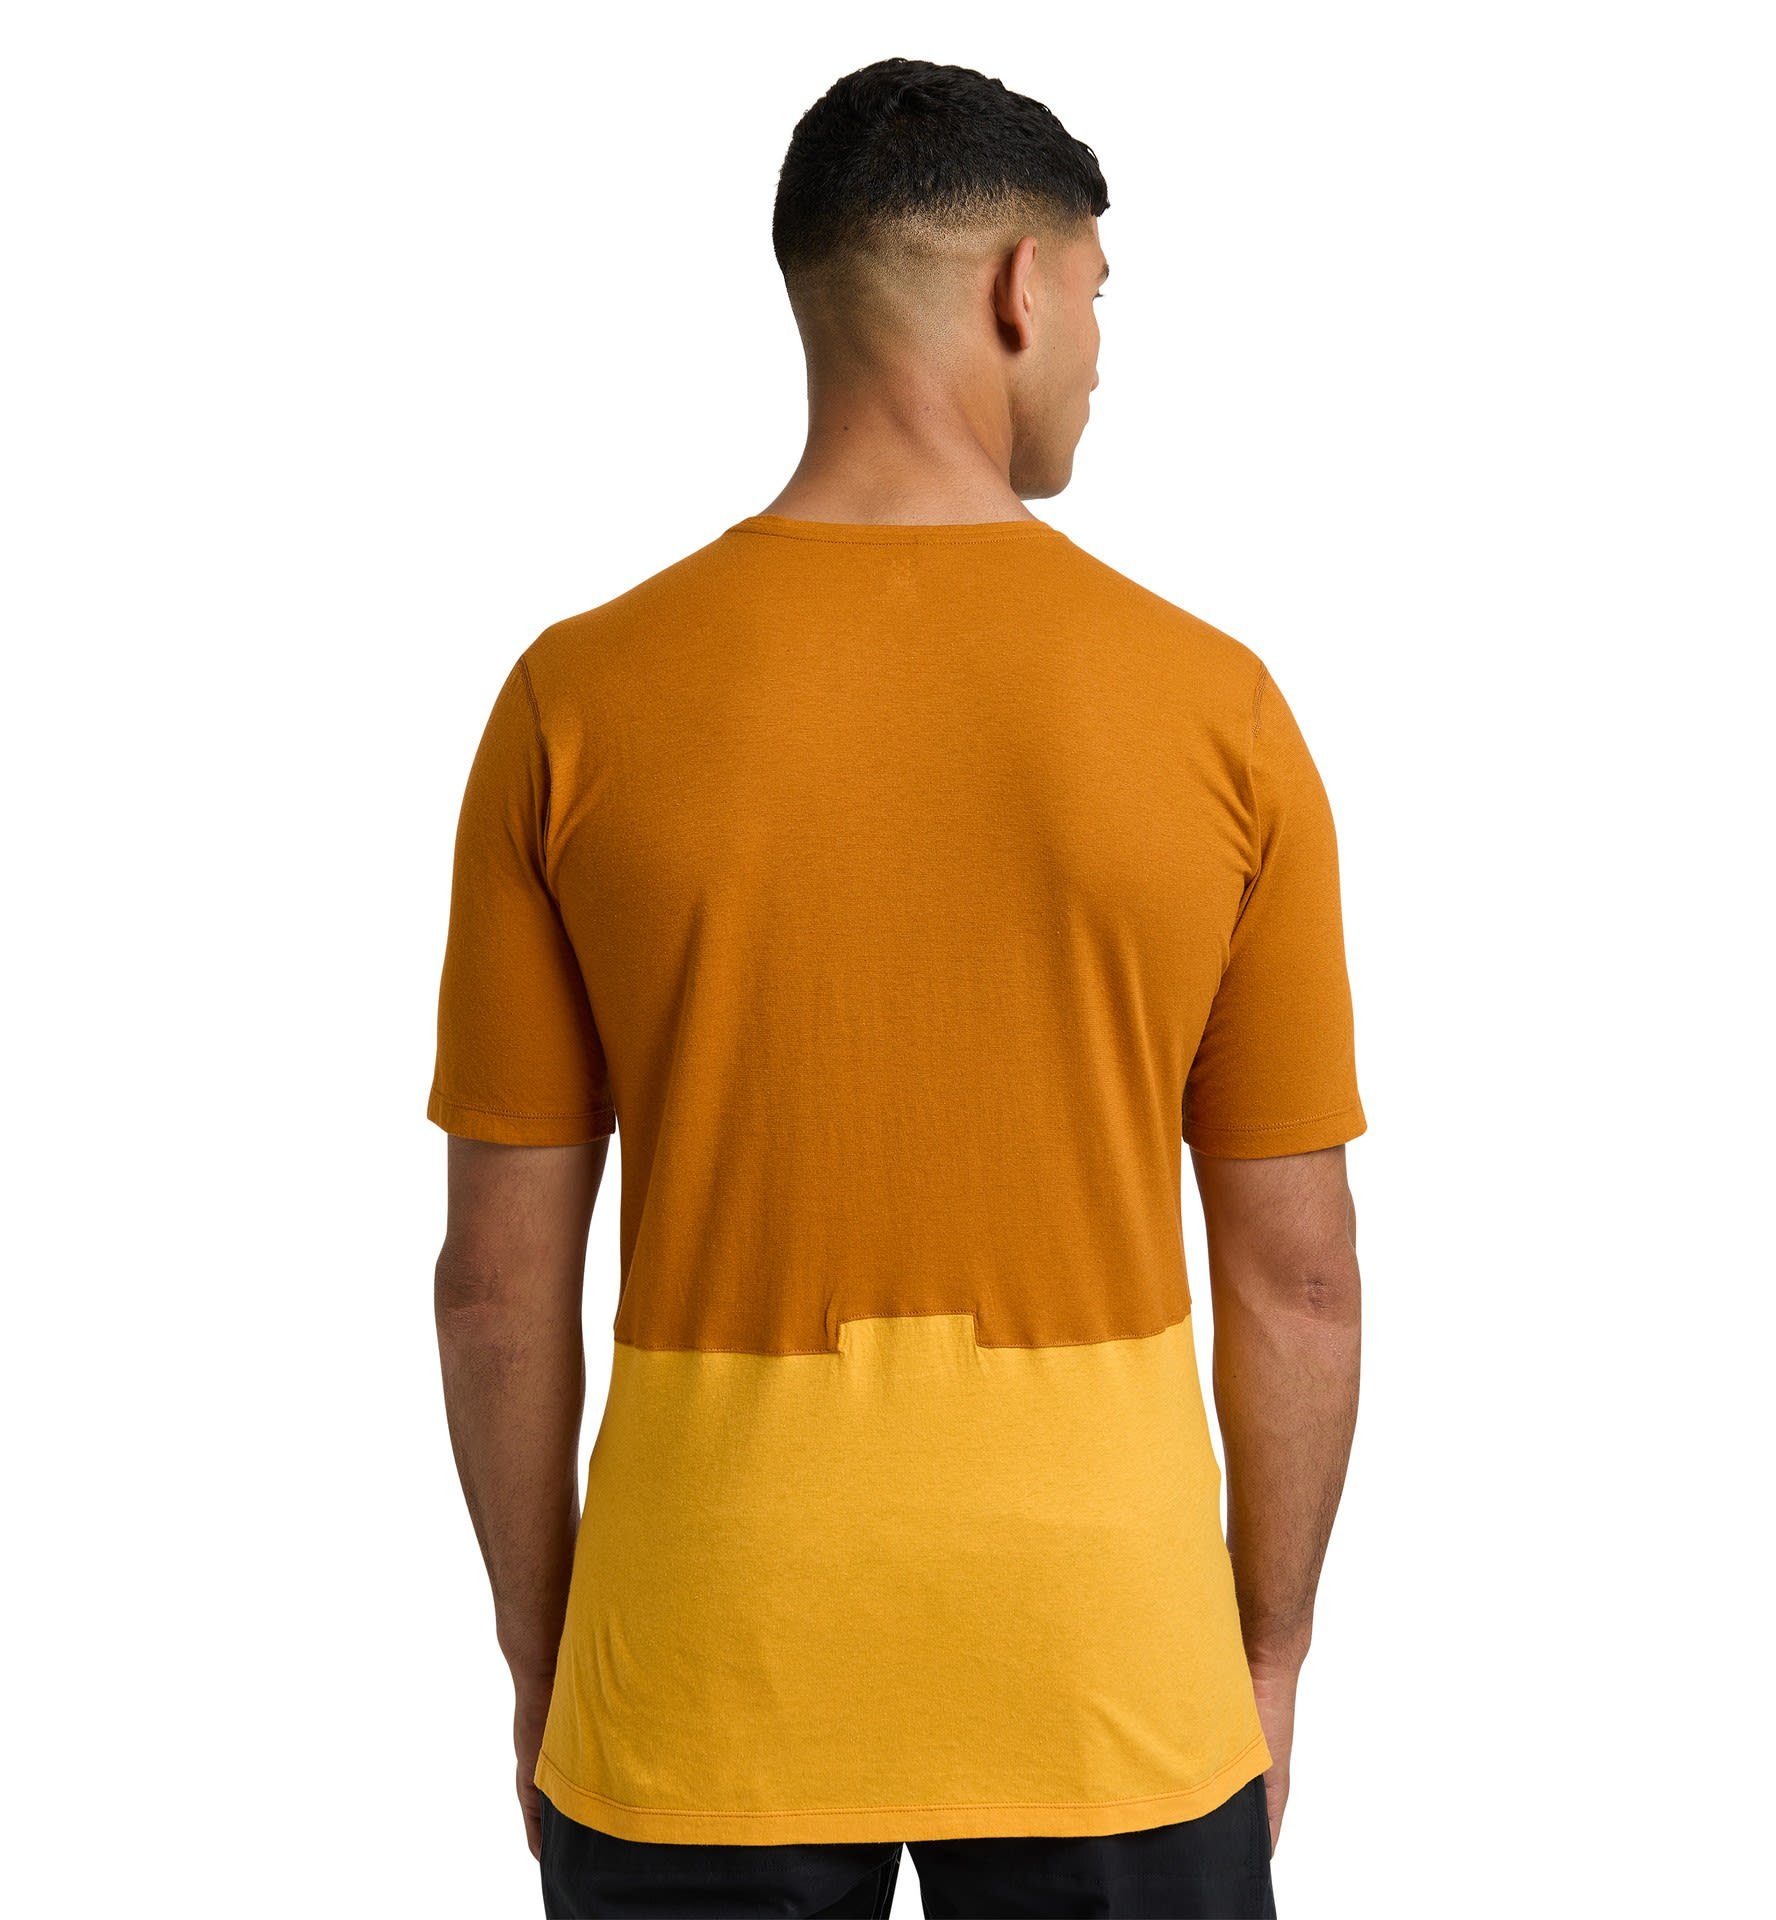 Brown Tee Yellow Roc Grip - Herren Golden T-Shirt M Haglöfs Kurzarm-Shirt Sunny Haglöfs